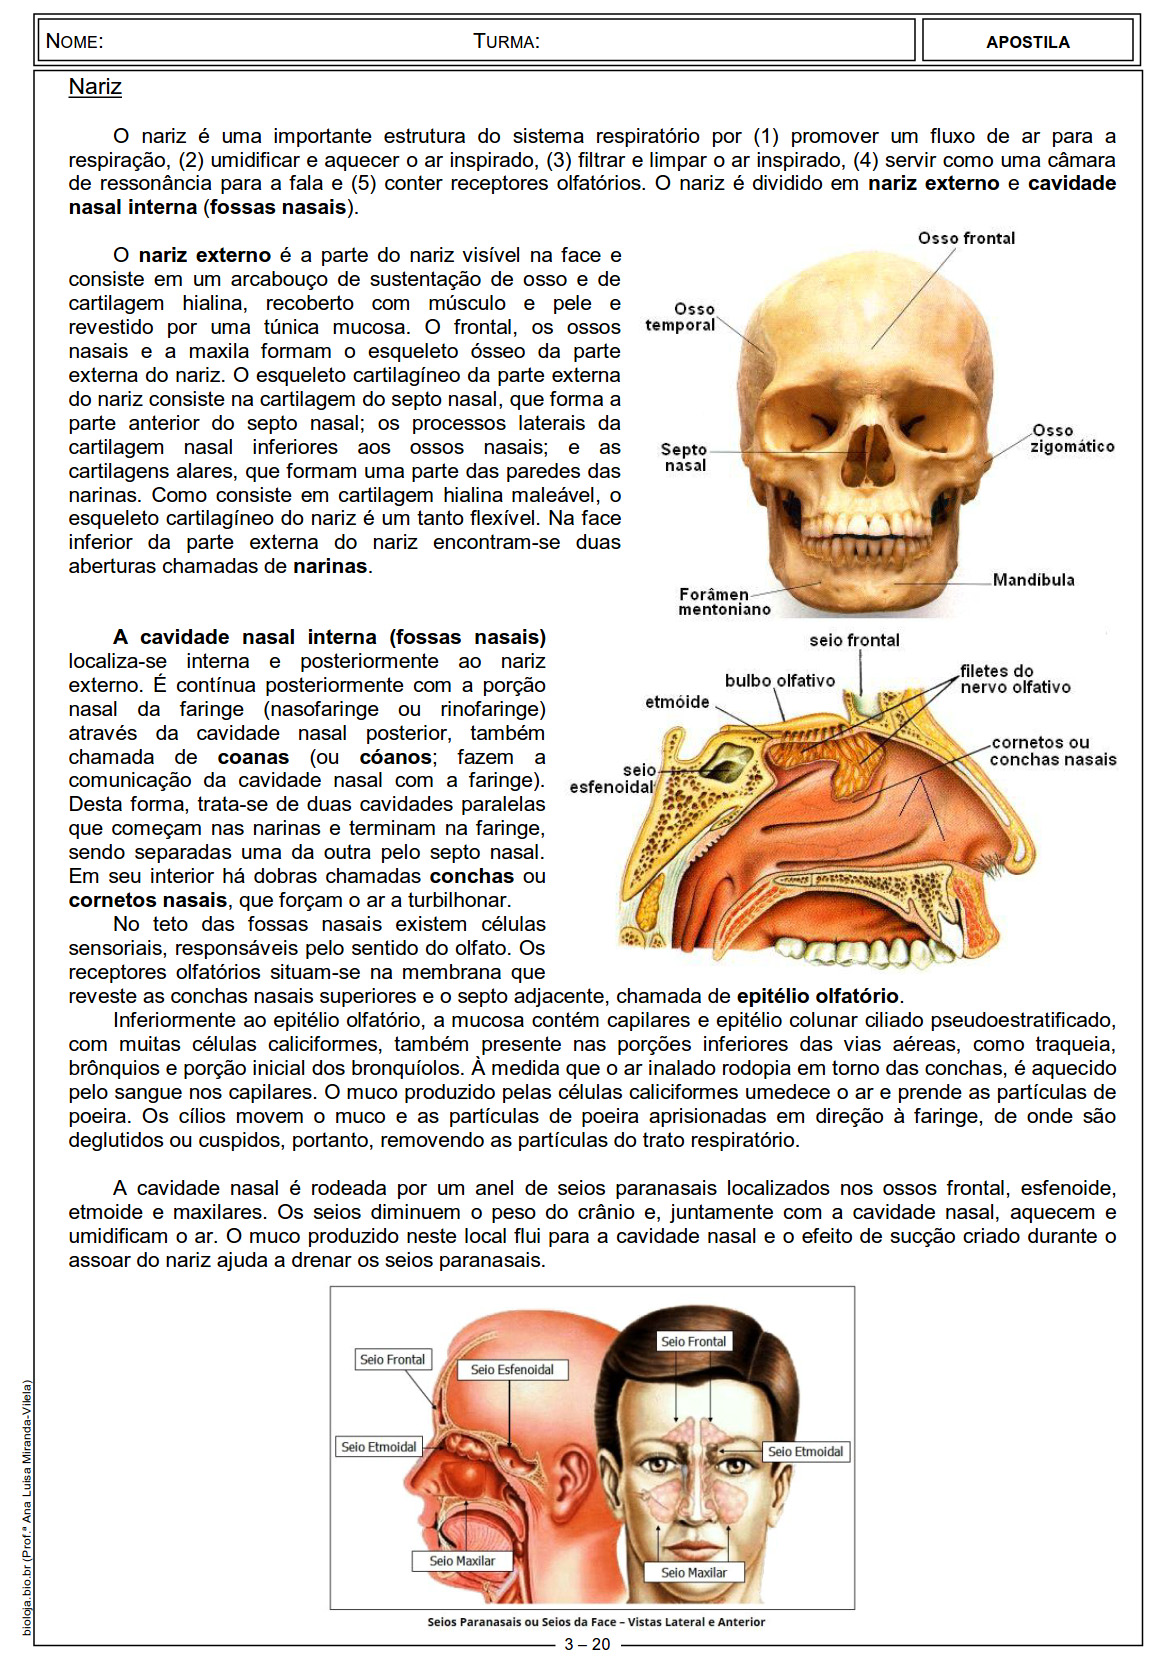 Apostila Fisiologia de órgãos e sistema III: sistema respiratório slide 3